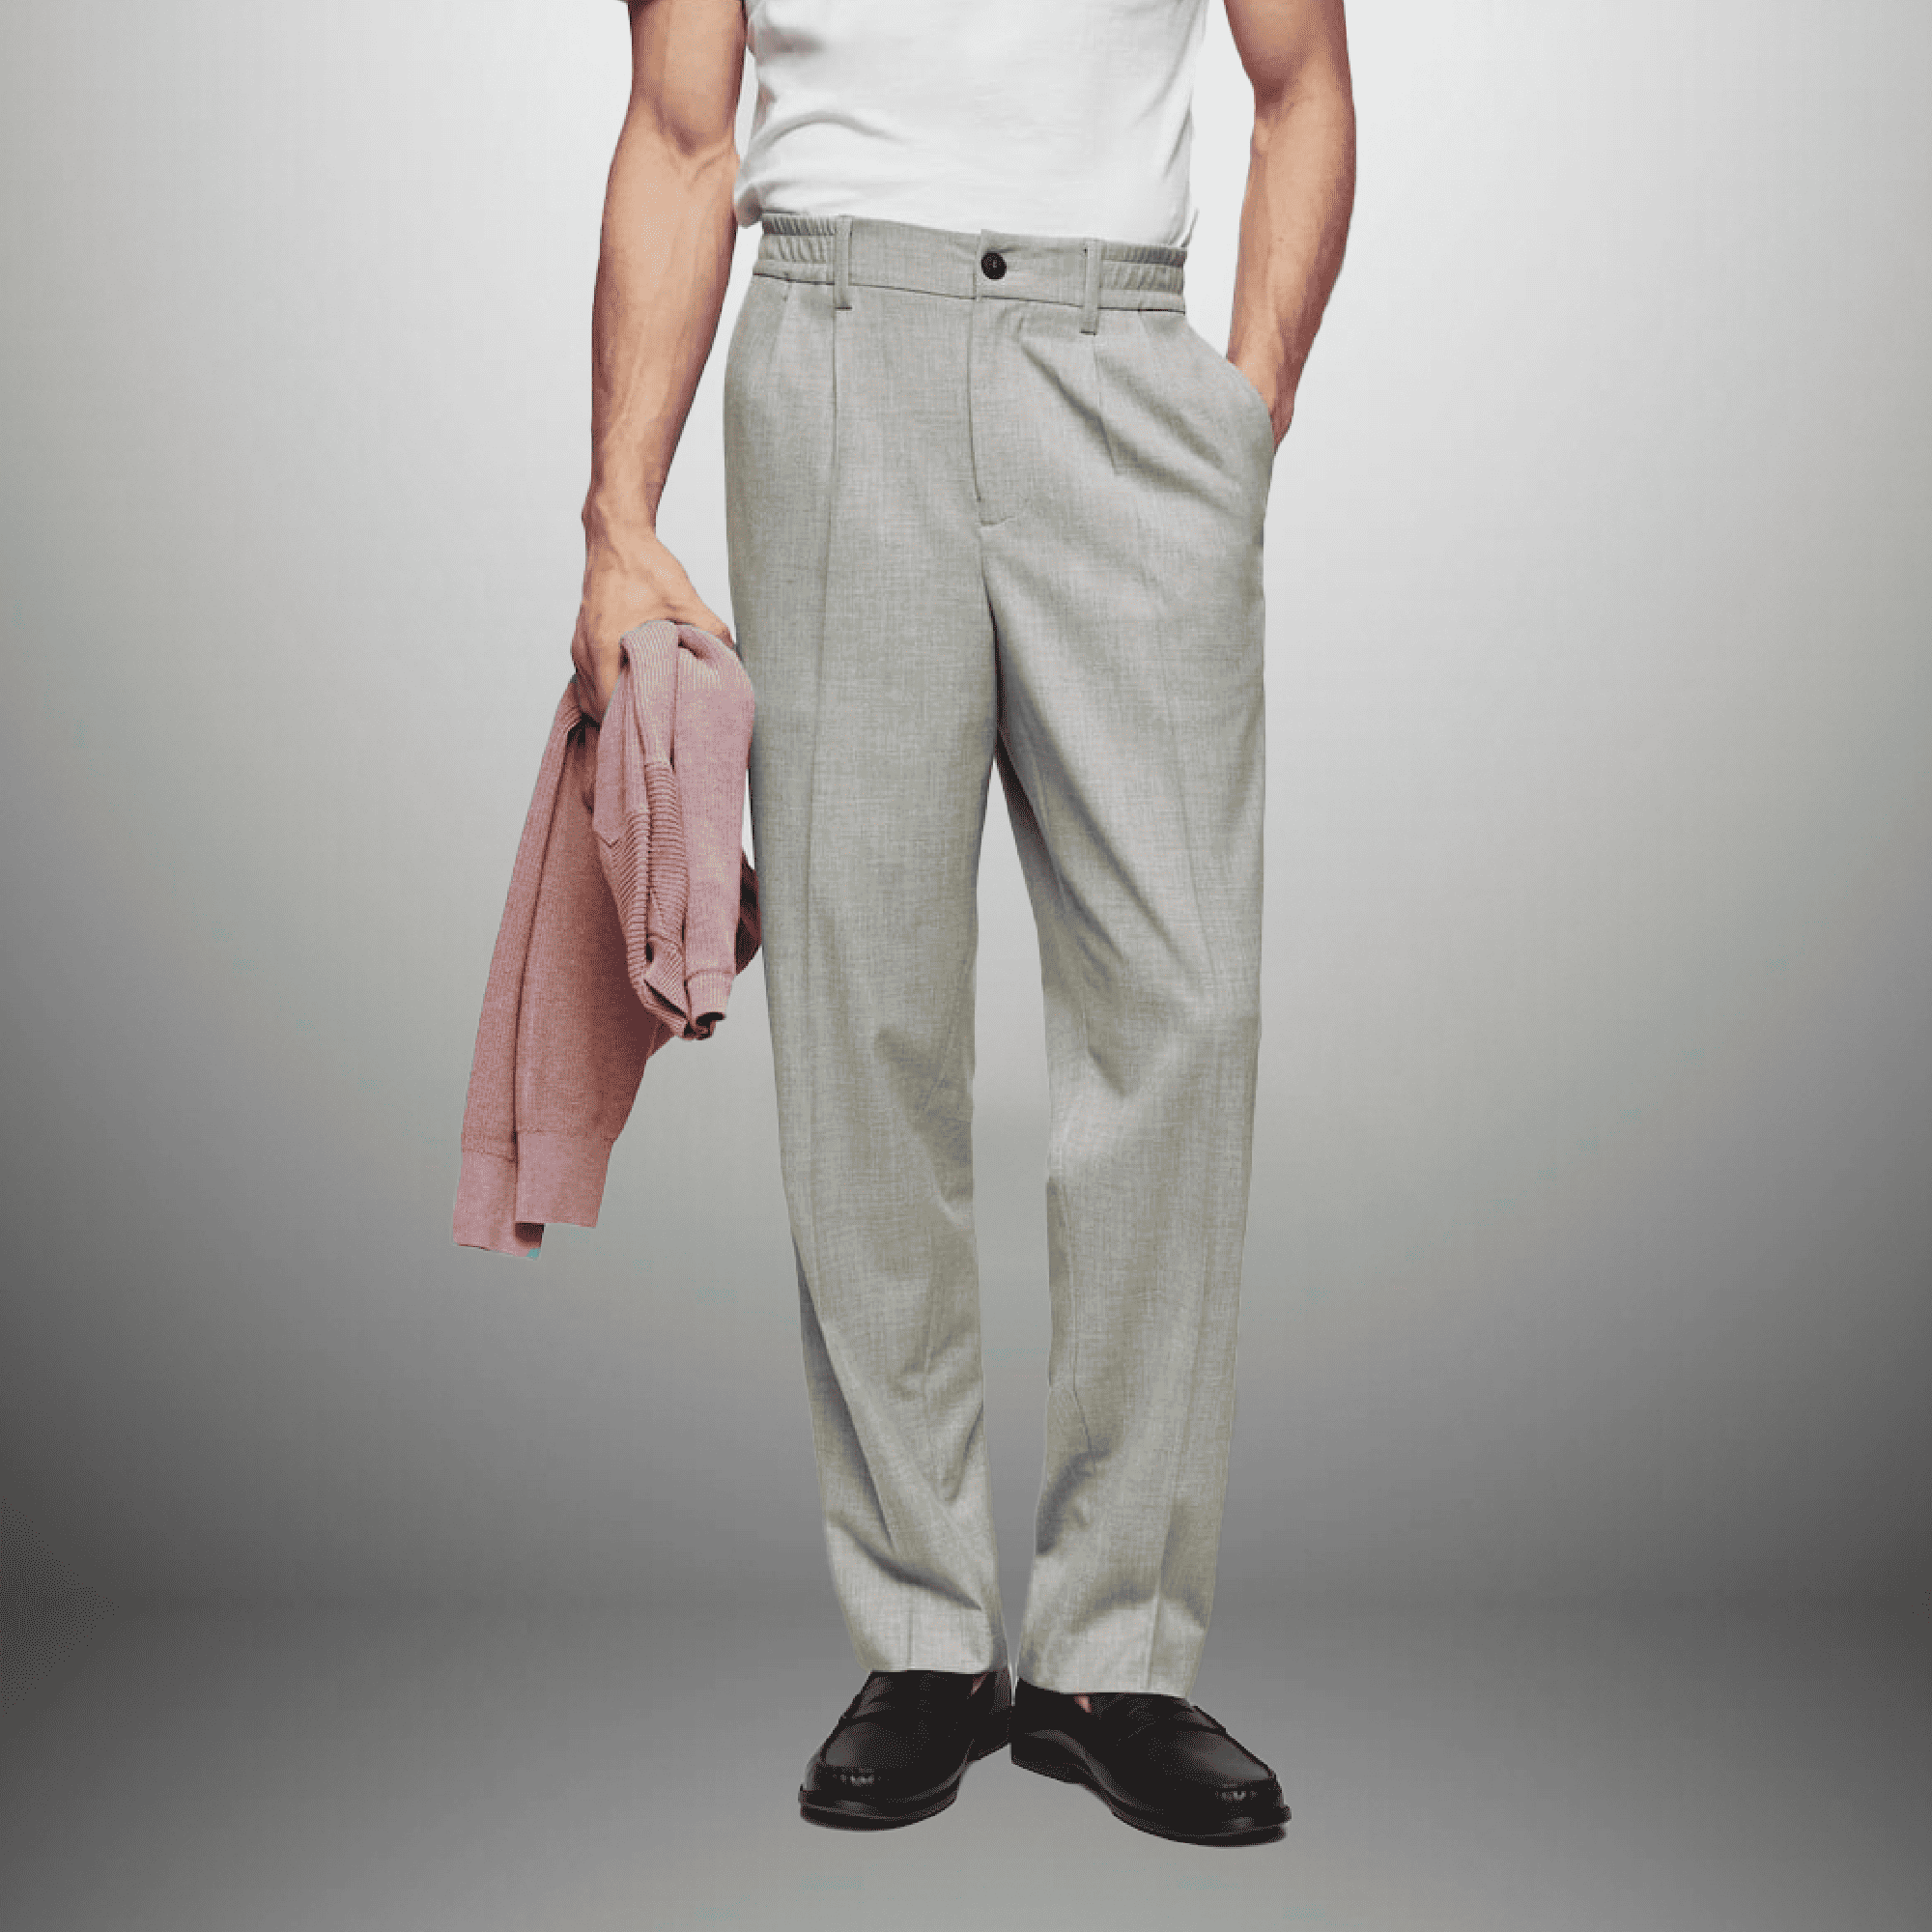 Men's Grey Pants with elastic Waist-RMT010